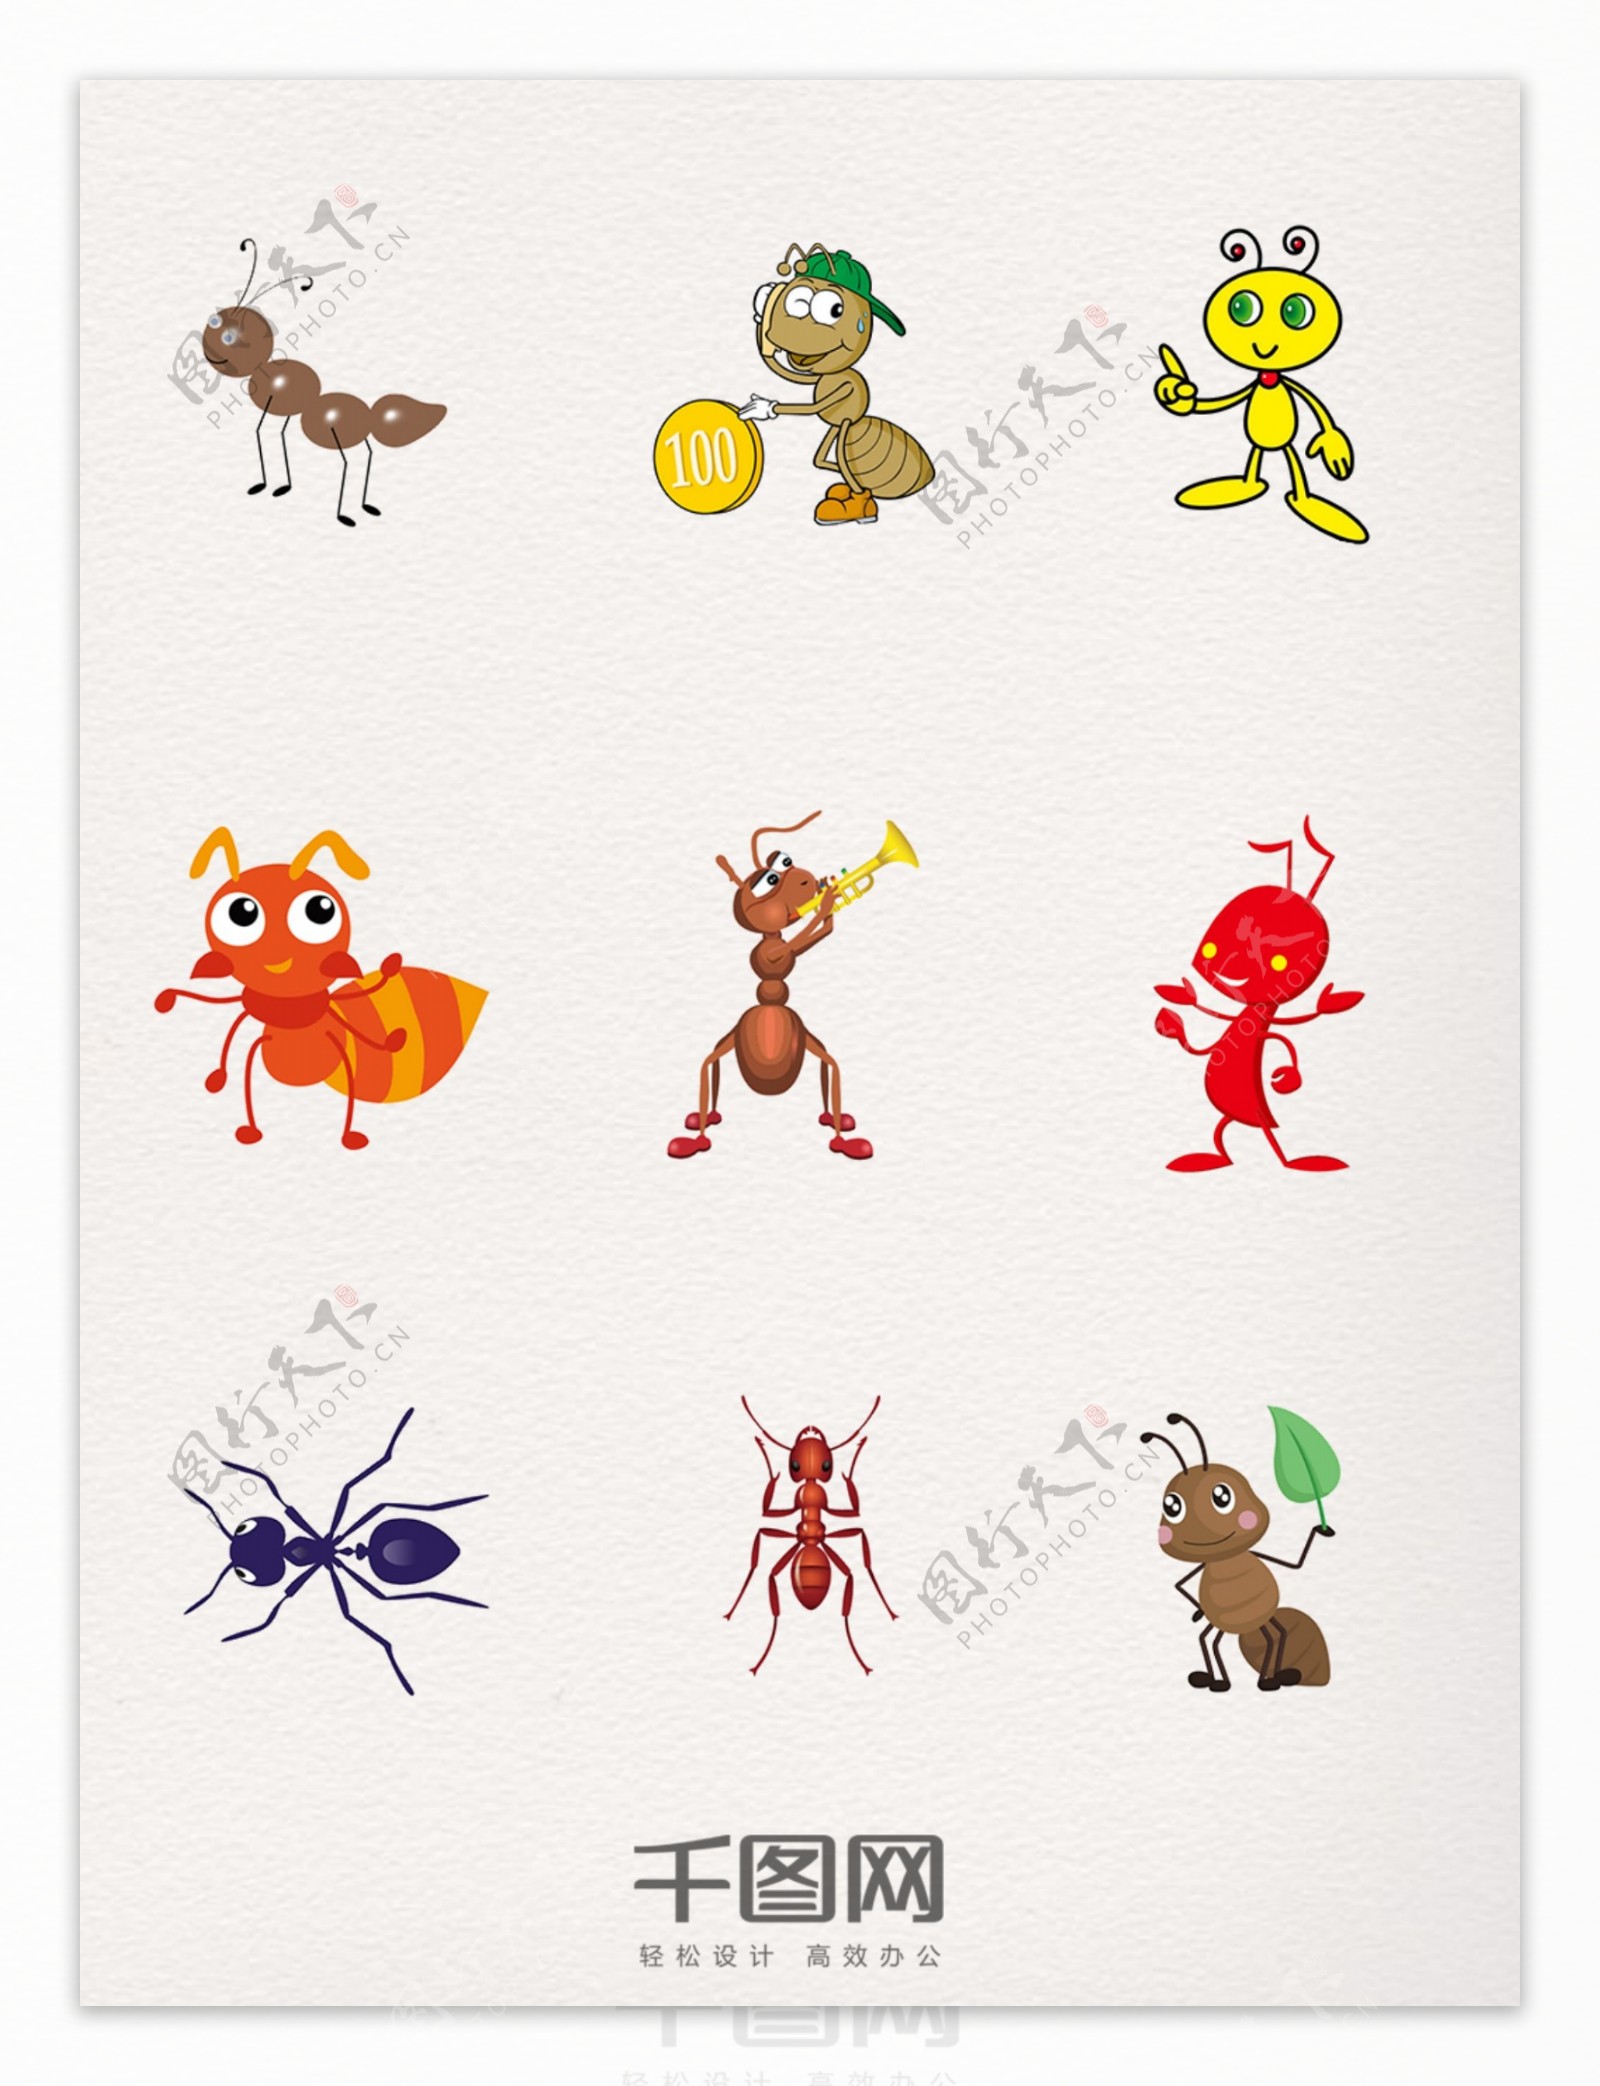 蚂蚁装饰元素图案